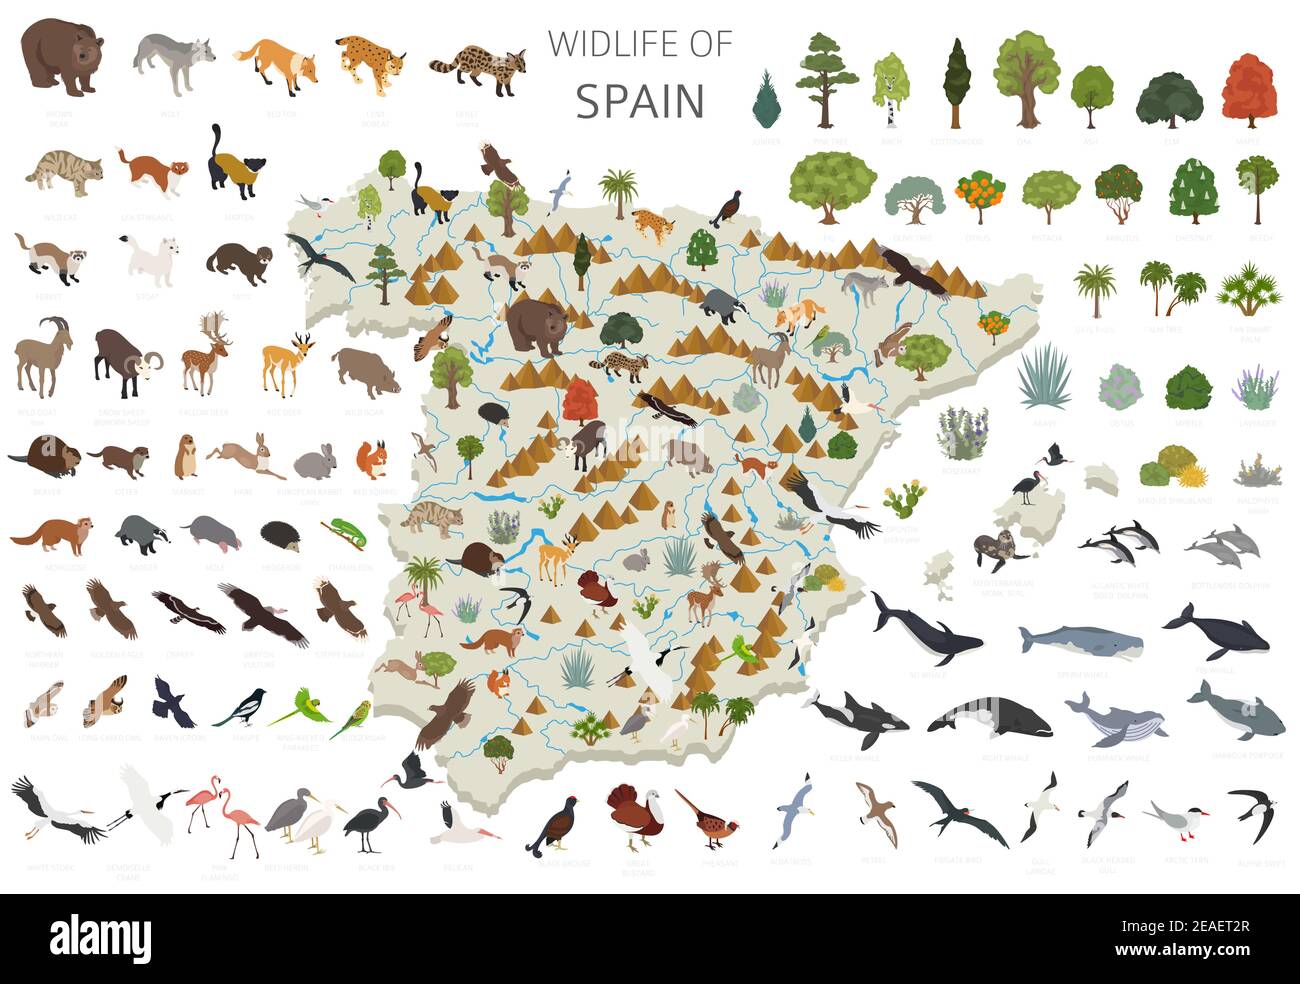 Progettazione 3D isometrica della fauna selvatica spagnola. Elementi costruttivi di animali, uccelli e piante isolati su set bianco. Costruisci il tuo sistema di infografiche geografiche Illustrazione Vettoriale